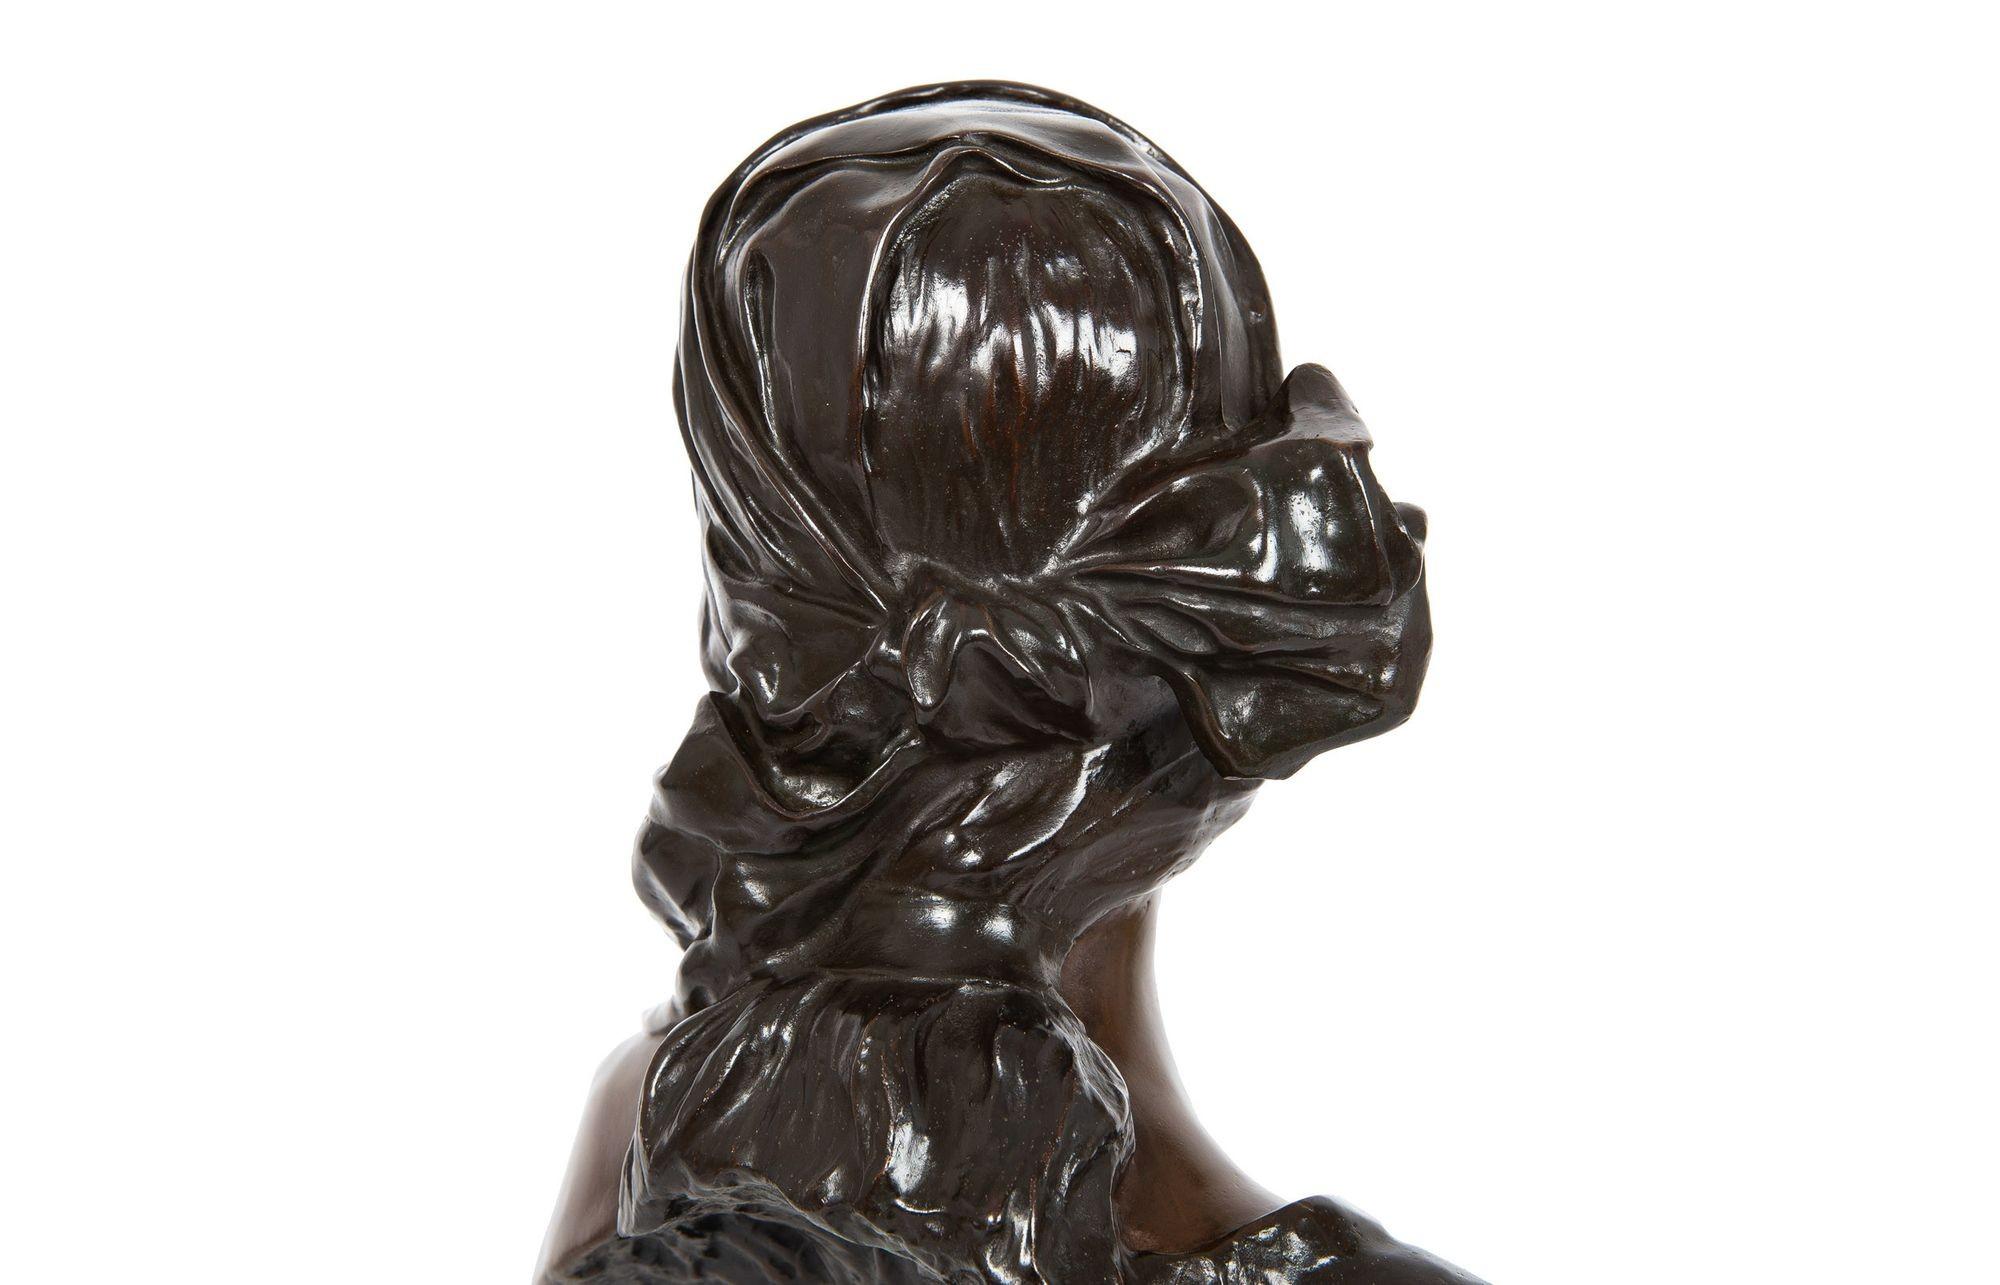 Art Nouveau Bronze Sculpture “Cendrillon” or Cinderella by Emmanuel Villanis For Sale 9